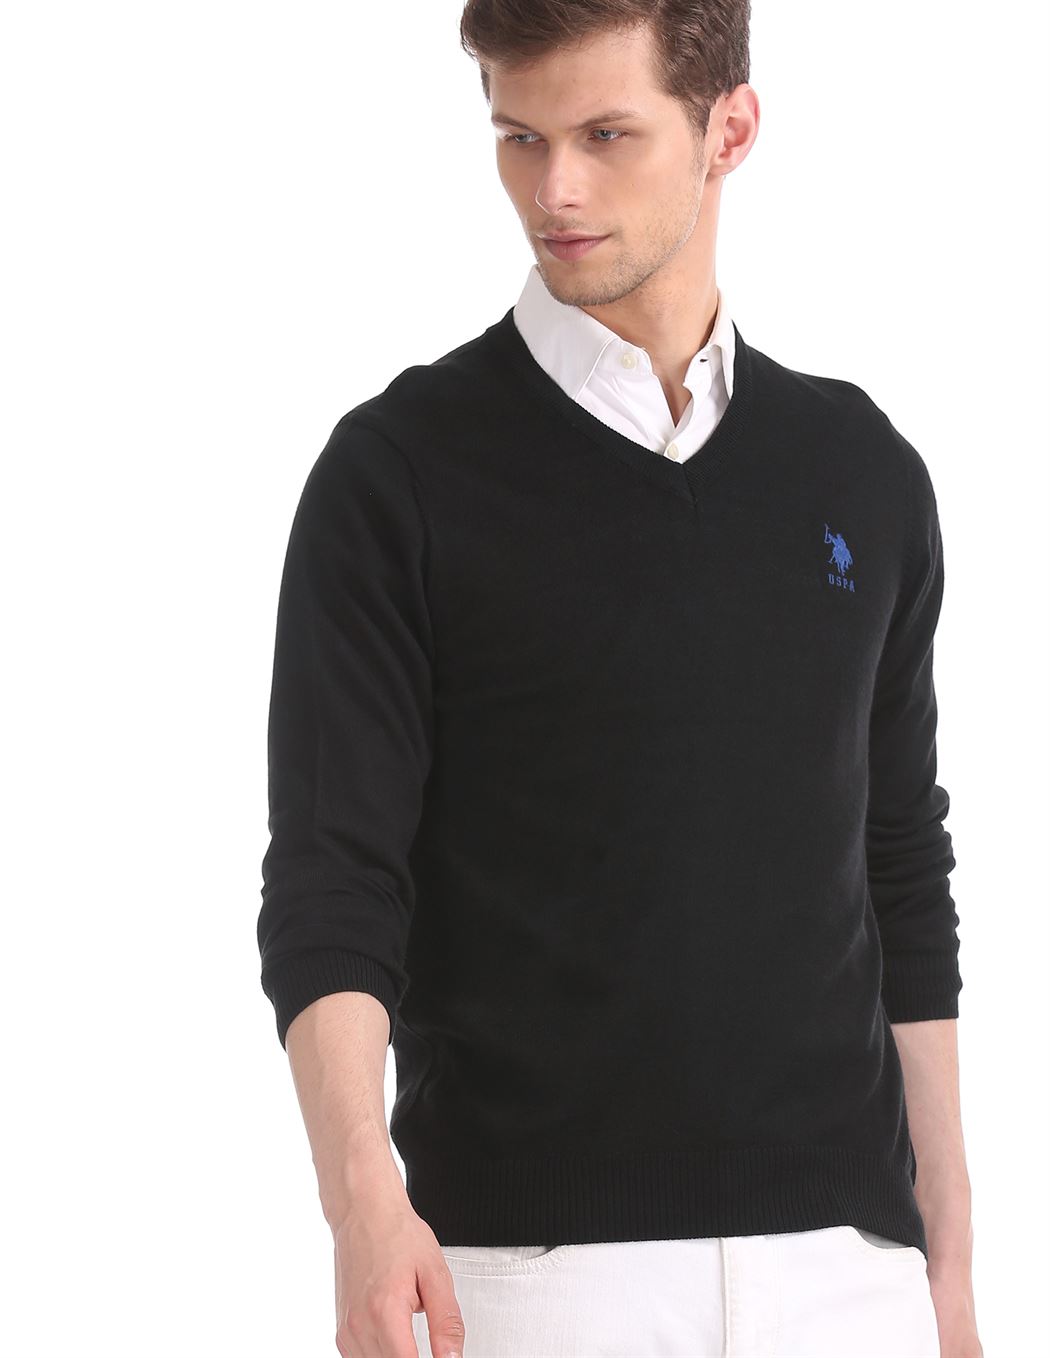 U.S.Polo Association Men'S Casual Wear Solid Black Sweater